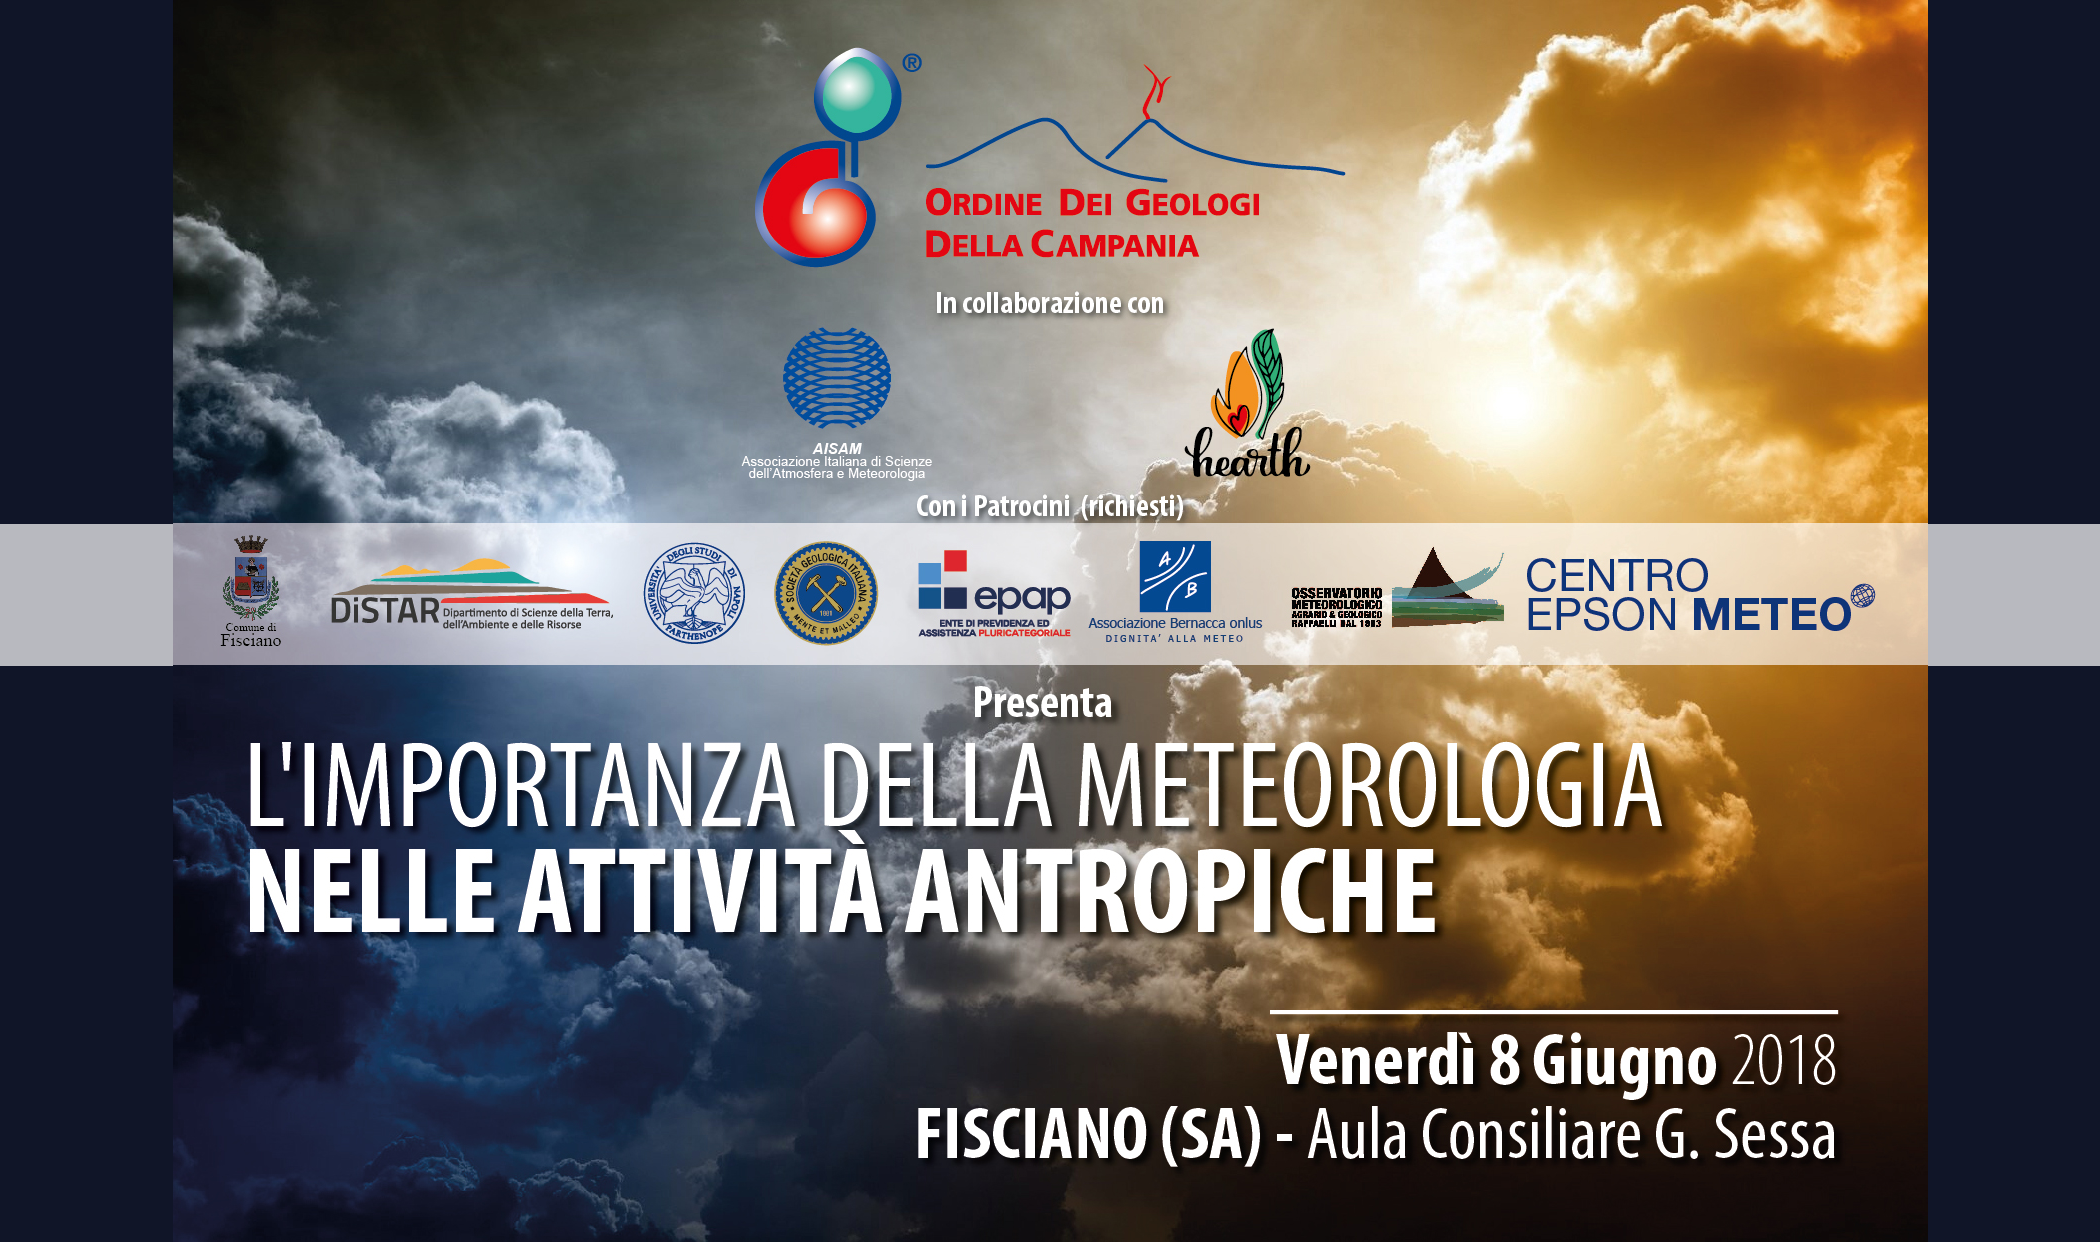 Convegno sulla meteorologia a Fisciano con la partecipazione di Cardine srl